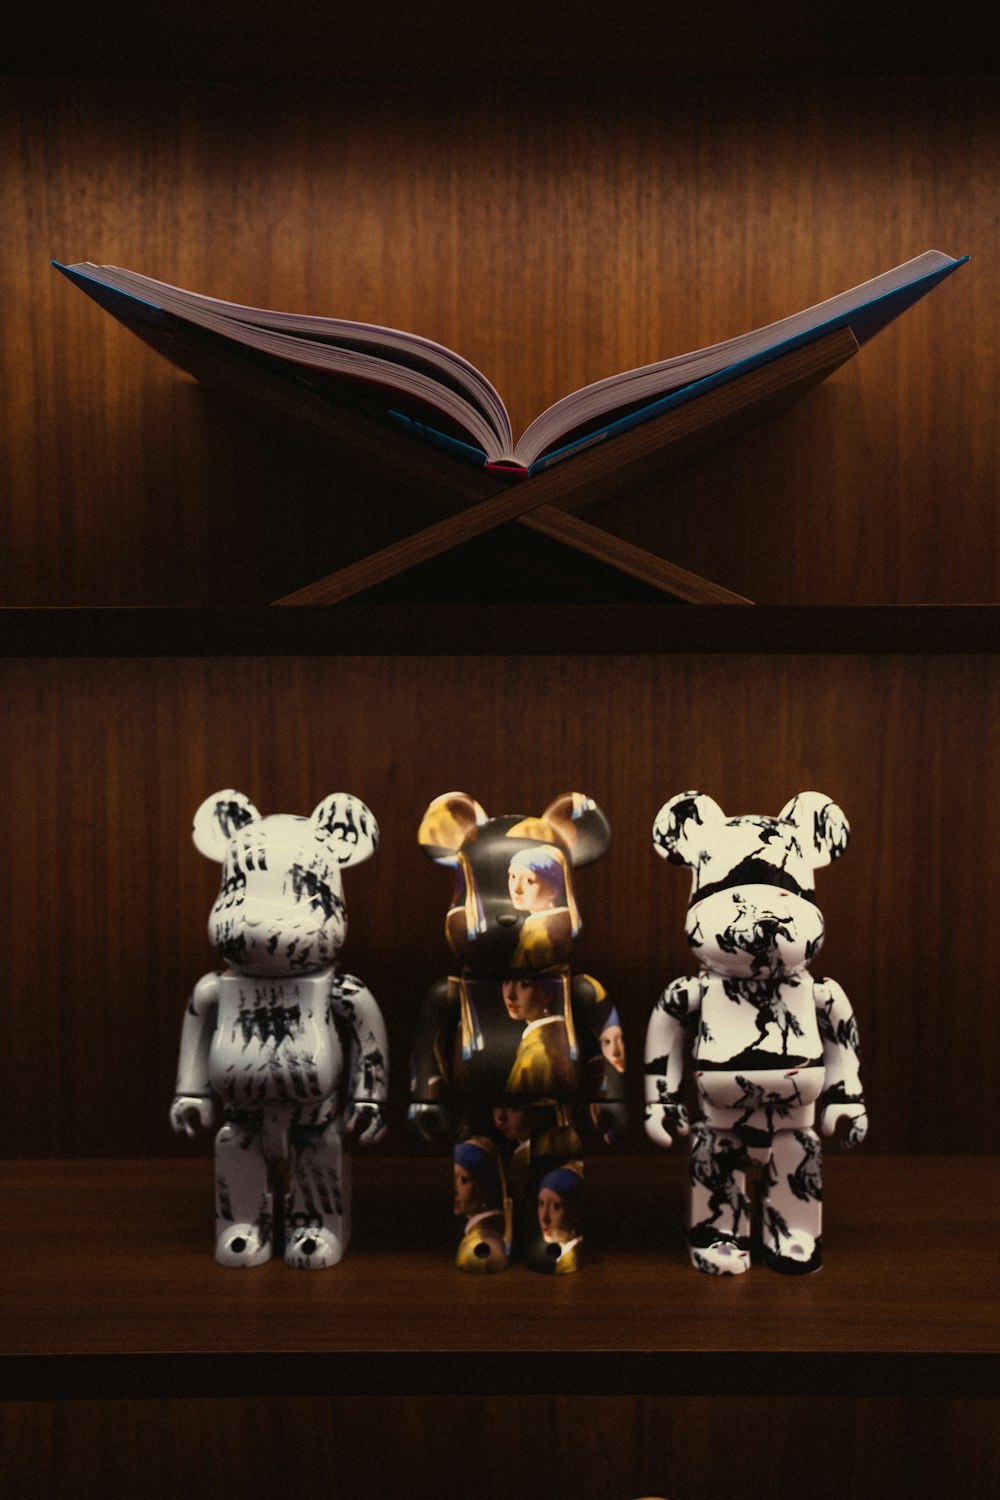 a group of figurines on a shelf